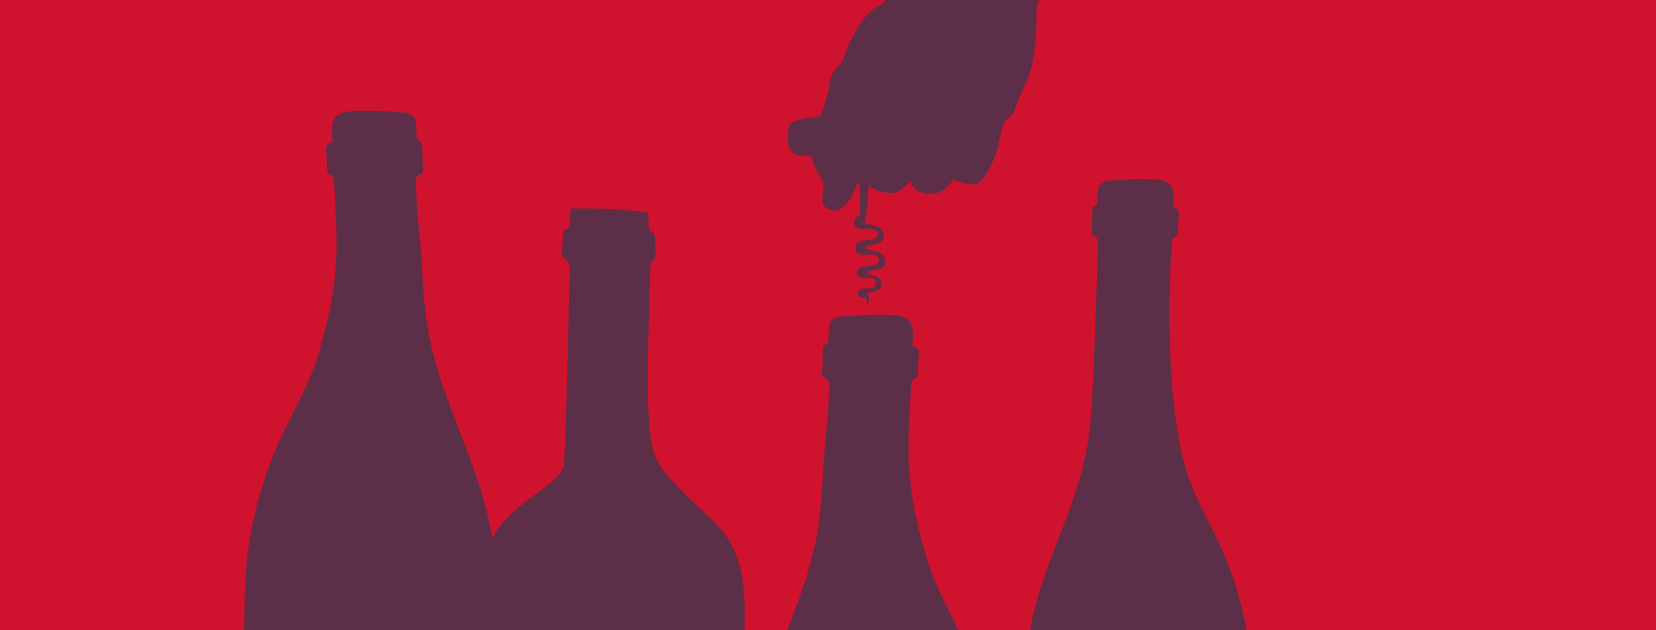 Logo de bouteilles de vin sombres sur fond rouge.